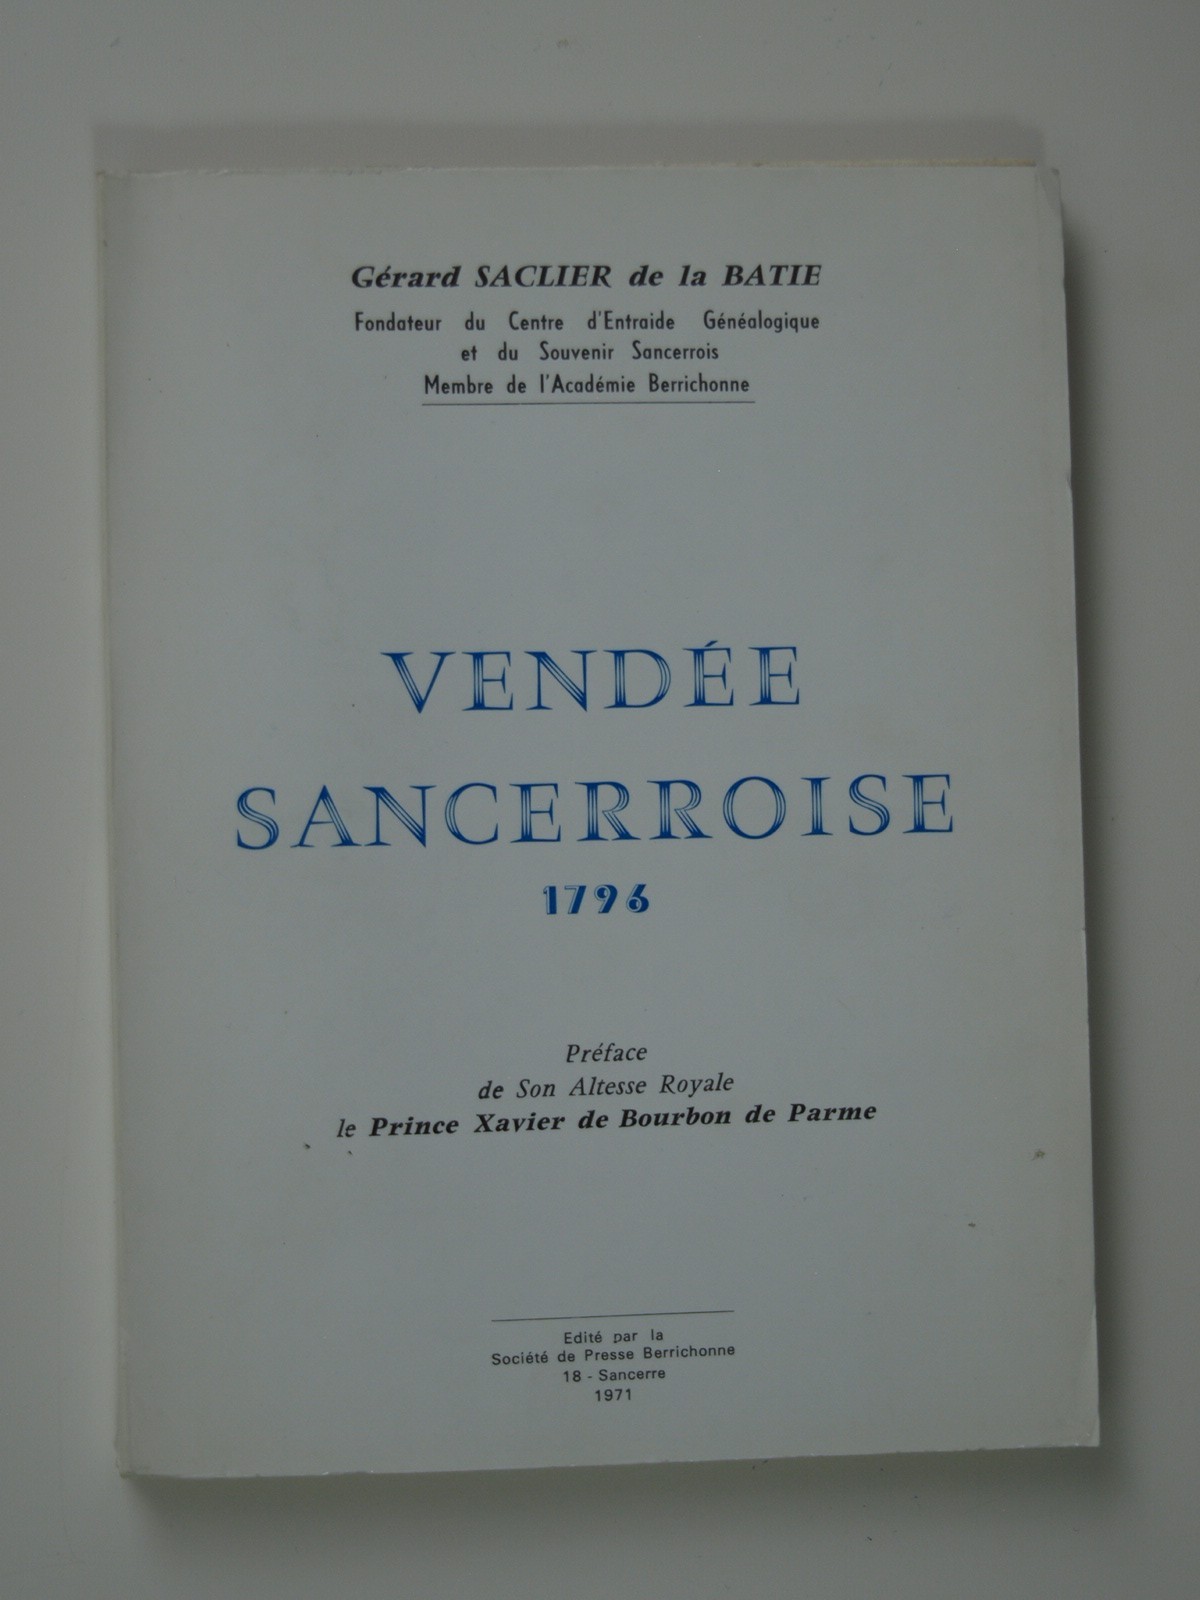 SACLIER de la BATIE Gérard : Vendée sancerroise 1796